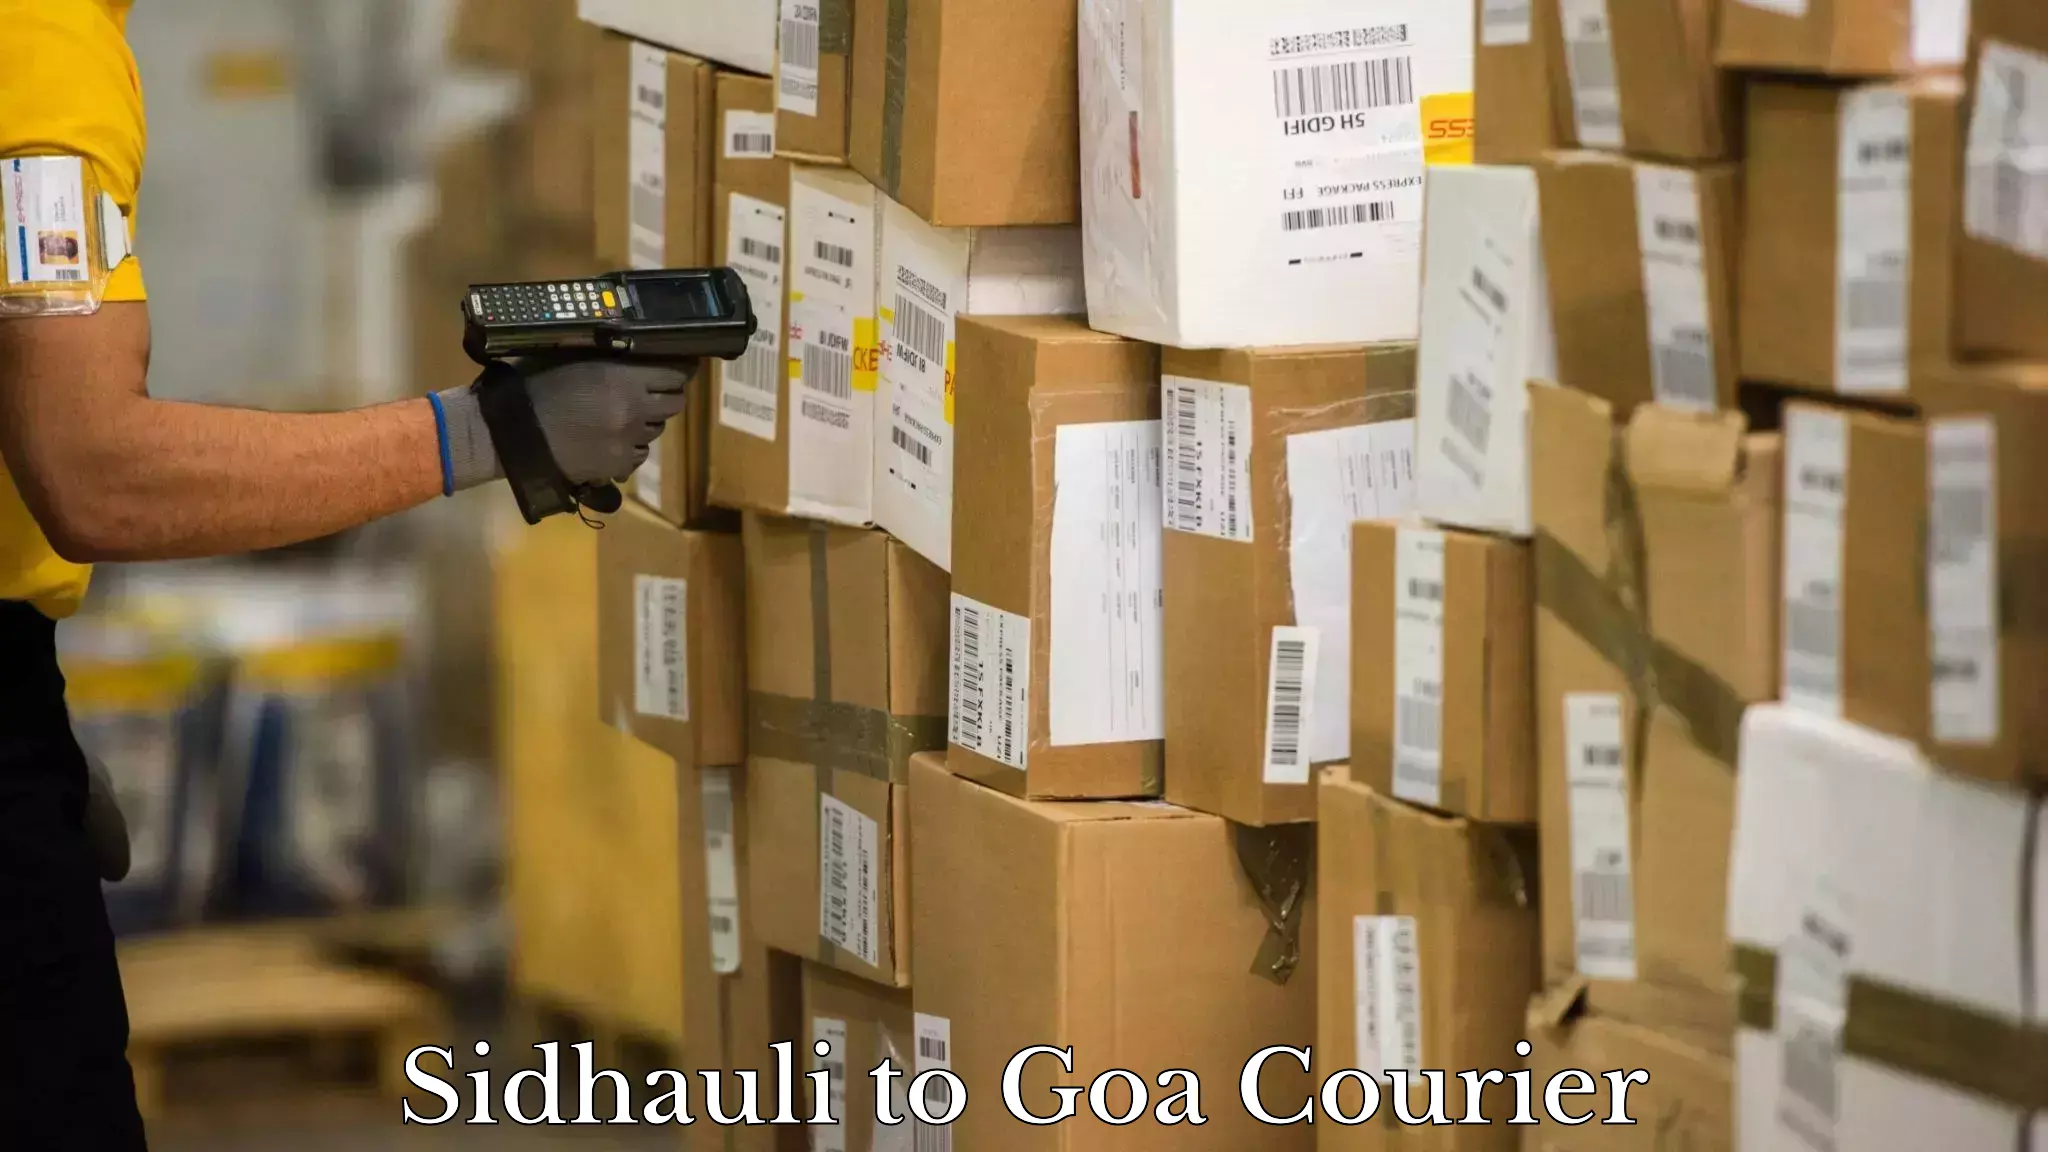 Global logistics network Sidhauli to Goa